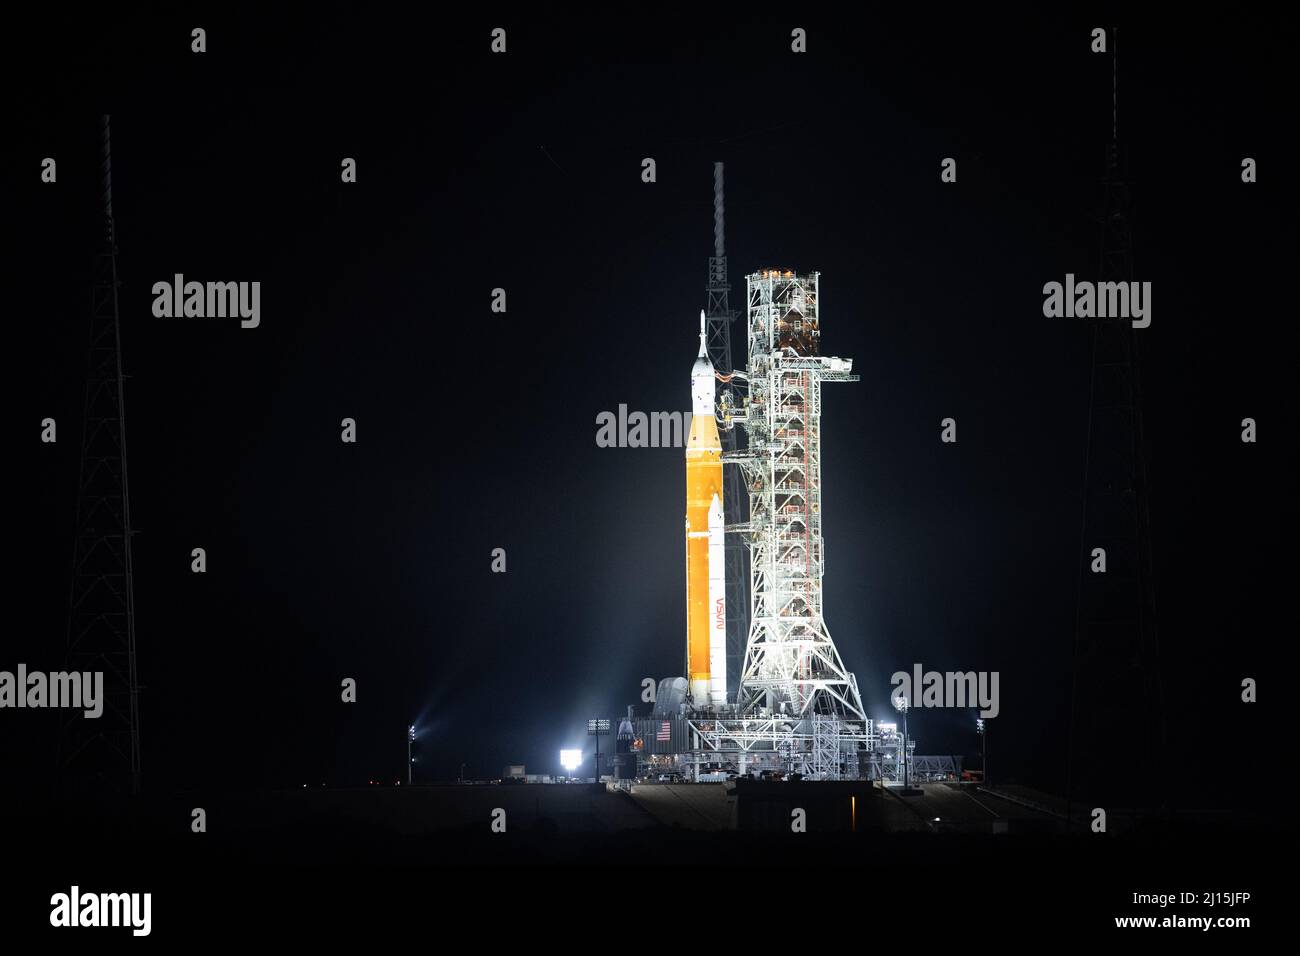 La fusée SLS (Space Launch System) de la NASA à bord de l'engin spatial Orion est illuminée par des projecteurs au sommet d'un lanceur mobile au Launch Complex 39B, le vendredi 18 mars 2022, après avoir été lancée pour la première fois sur le plateau de lancement au Kennedy Space Center de la NASA en Floride. Avant l'essai en vol Artemis I de la NASA, la fusée SLS et l'engin spatial Orion entièrement empilés et intégrés feront l'objet d'une répétition en robe humide au Launch Complex 39B pour vérifier les systèmes et pratiquer les procédures de compte à rebours pour le premier lancement. Crédit photo : (NASA/Joel Kowsky) Banque D'Images